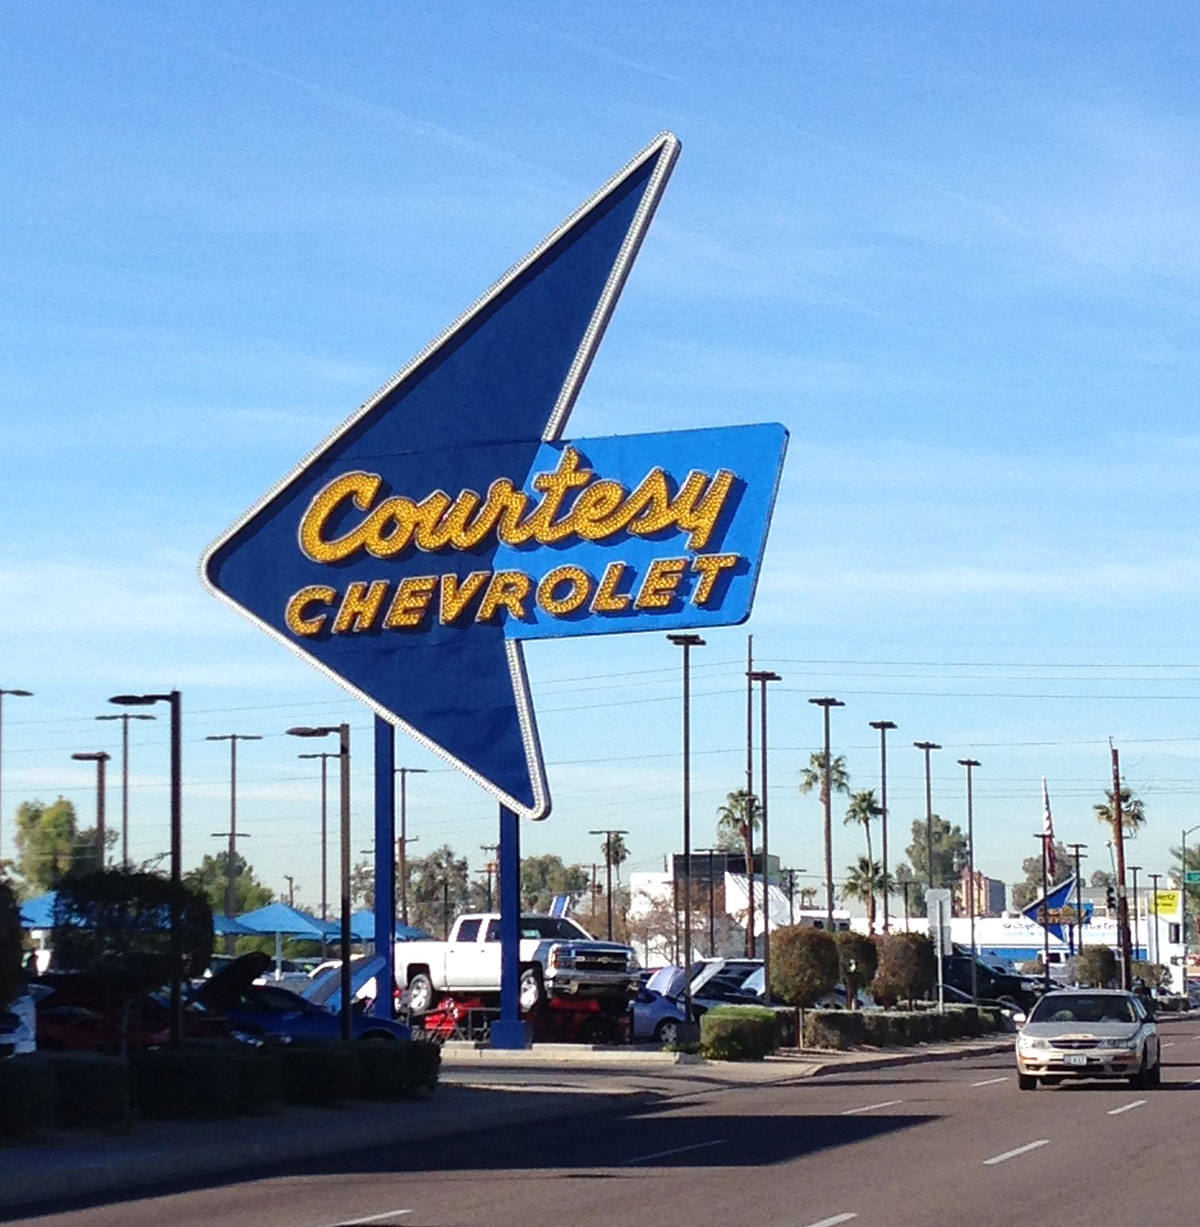 Courtesy Chevrolet Neon sign in Phoenix Arizona